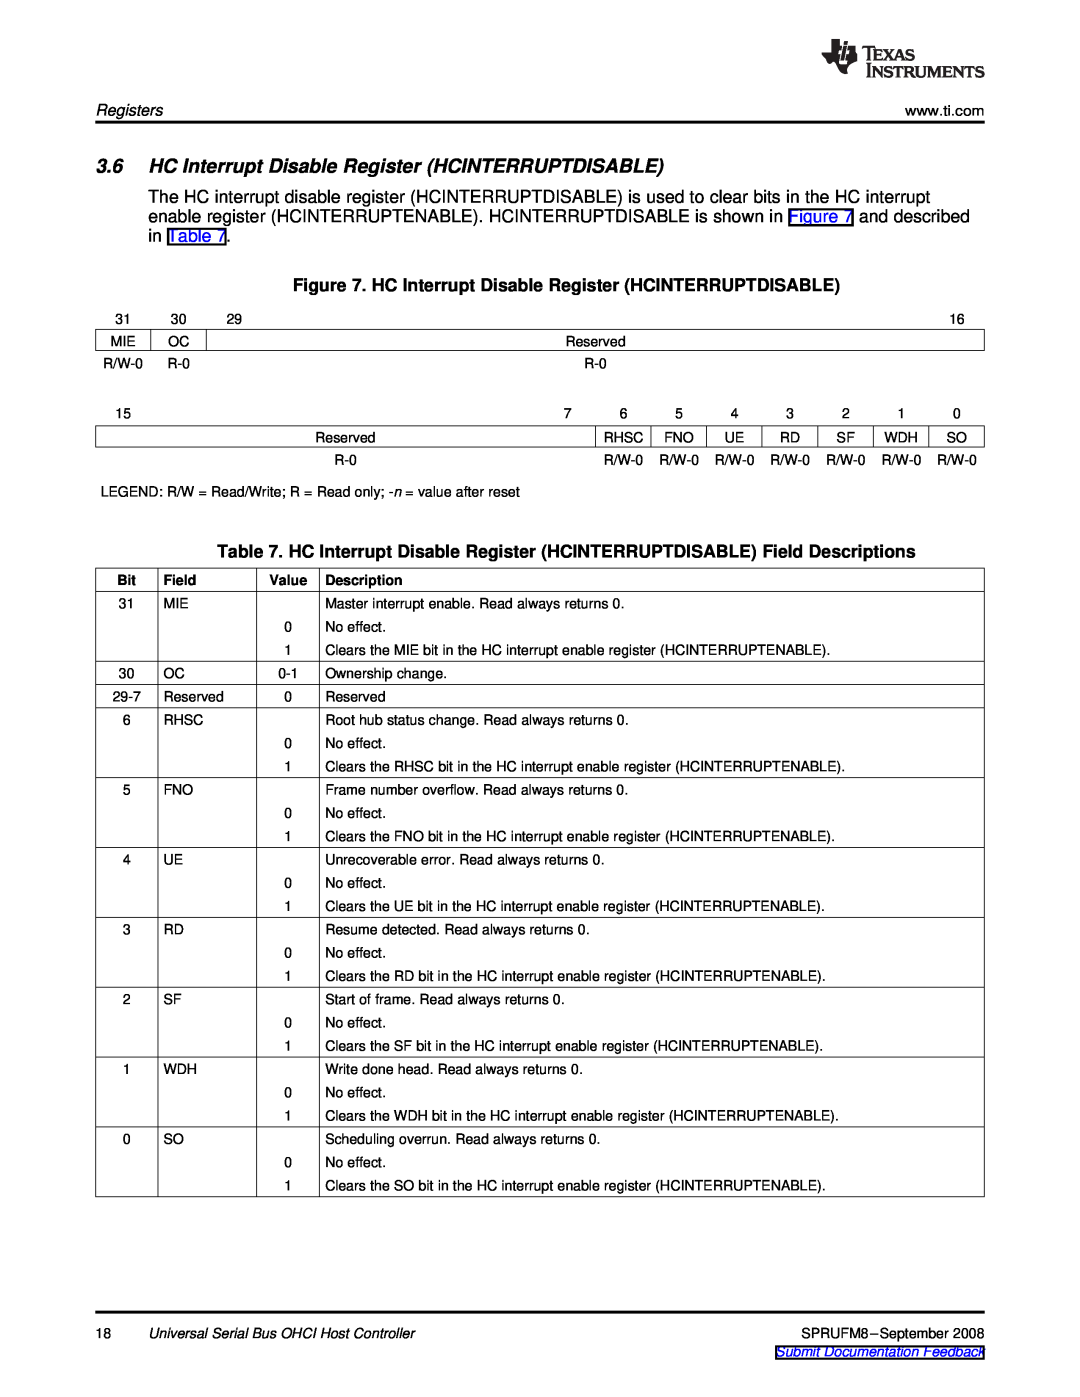 Texas Instruments TMS320C6747 DSP HC Interrupt Disable Register HCINTERRUPTDISABLE, Registers, Field, Value, Description 